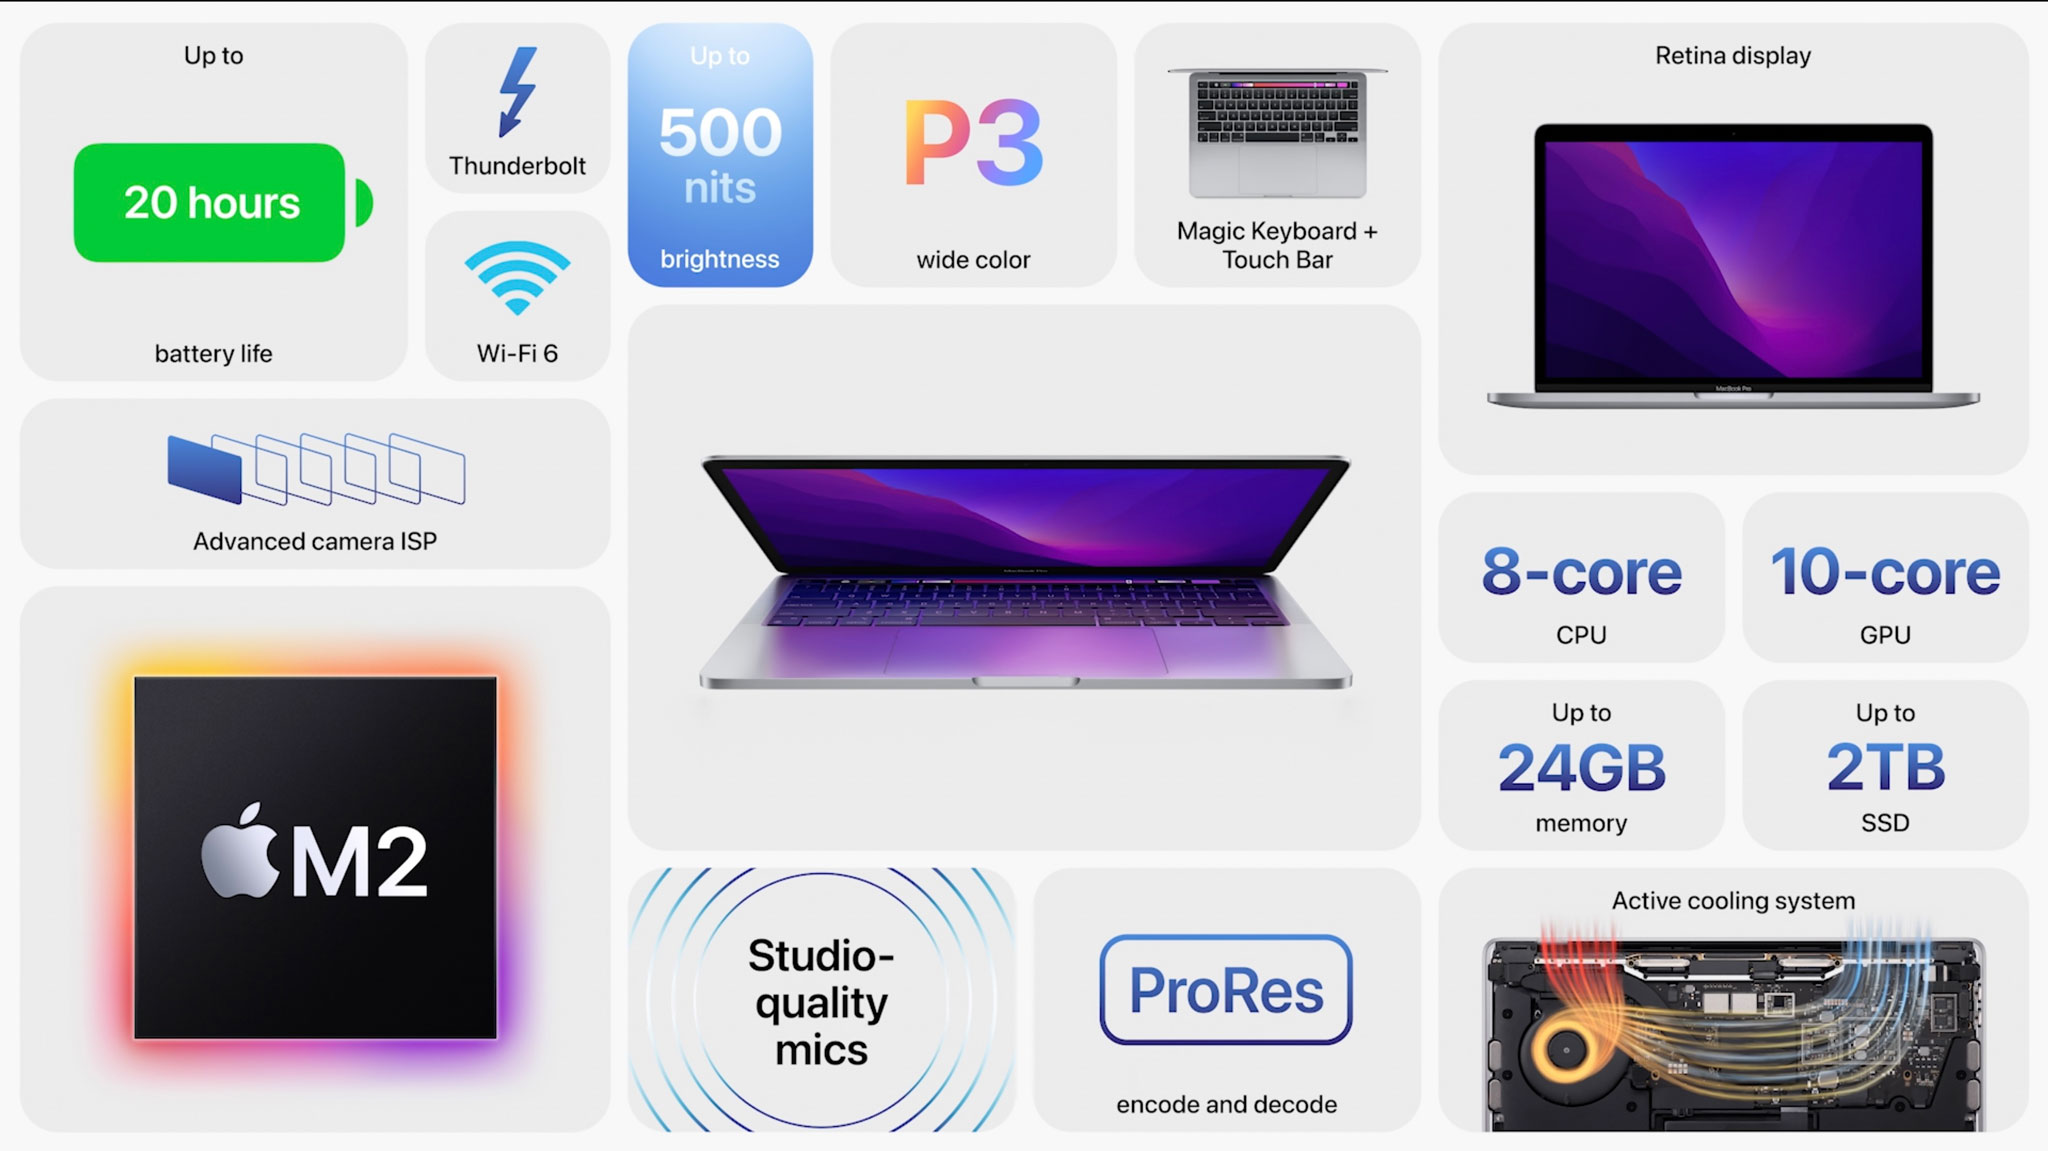 MacBook-Pro-13.jpg